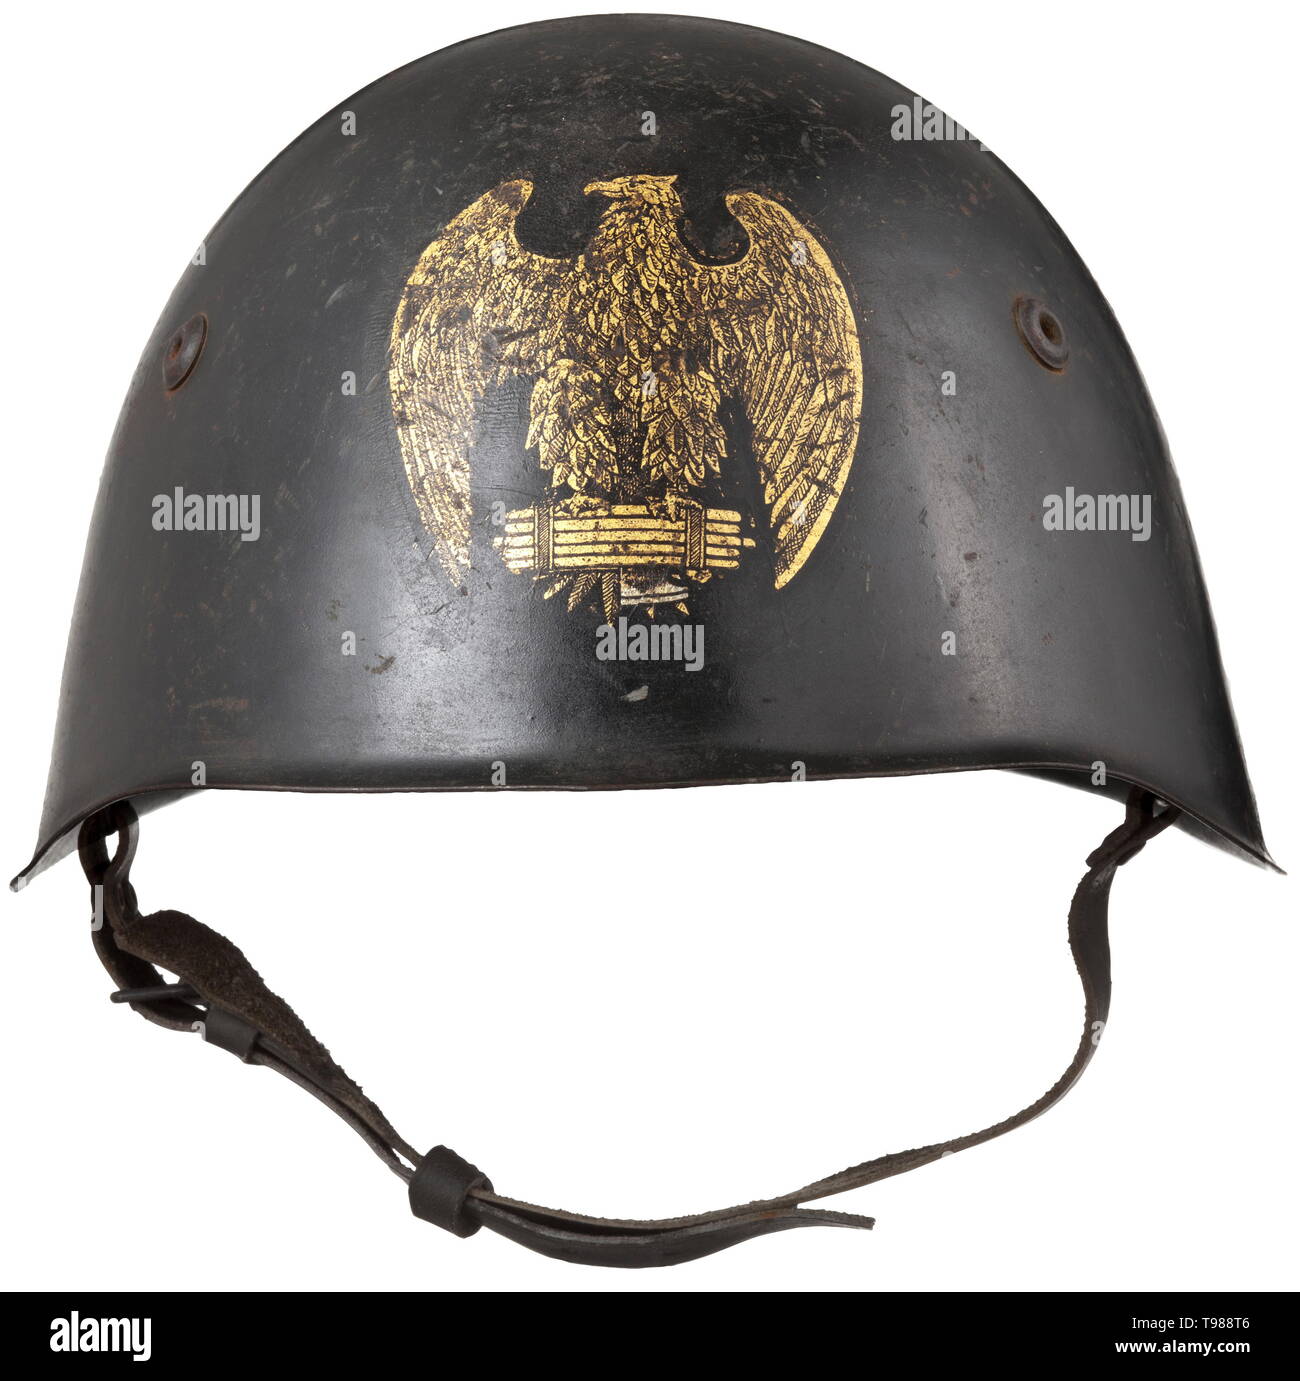 Un casco M 33 para del M.V.S.N. los fascistas italianos (Blackshirts) el cráneo acabado negro típico, el anverso con estampado dorado para generales. Forro de cuero marrón claro